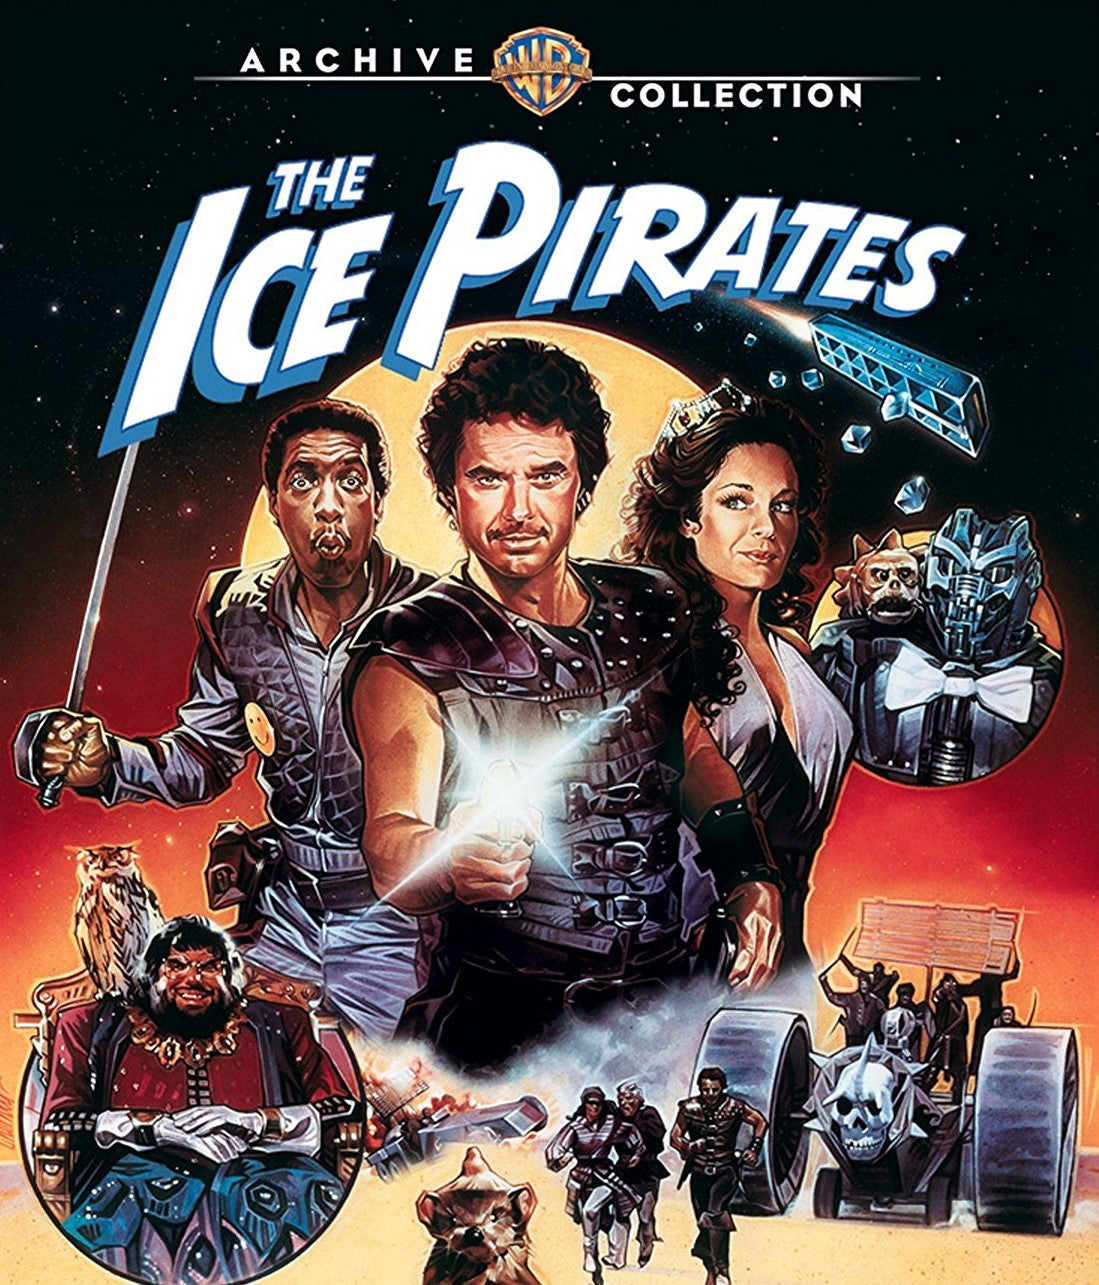 The Ice Pirates Blu-Ray Blu-Ray